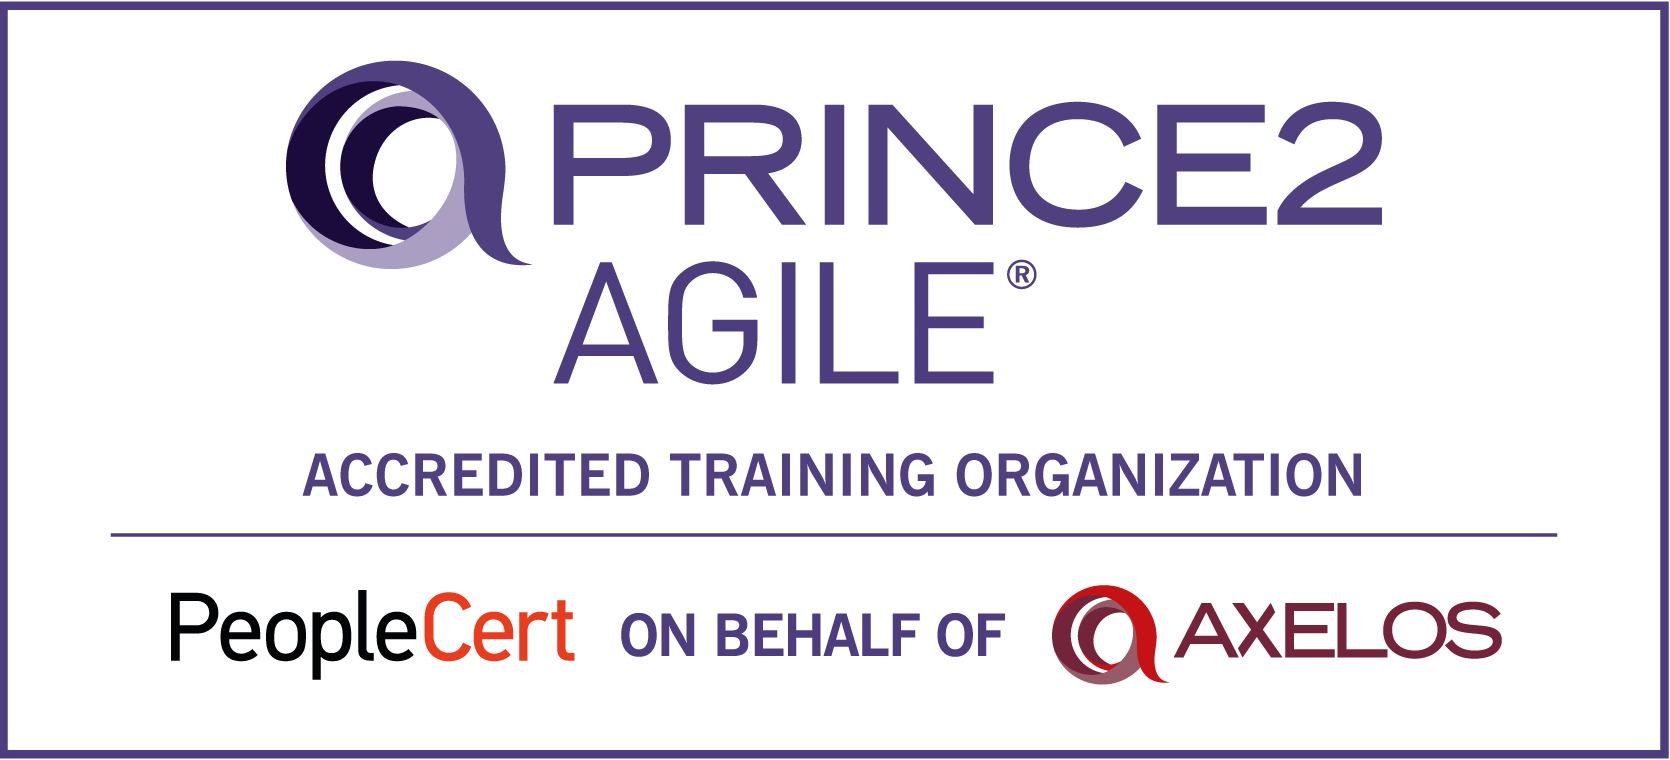 PRINCE2 Agile Foundation certification